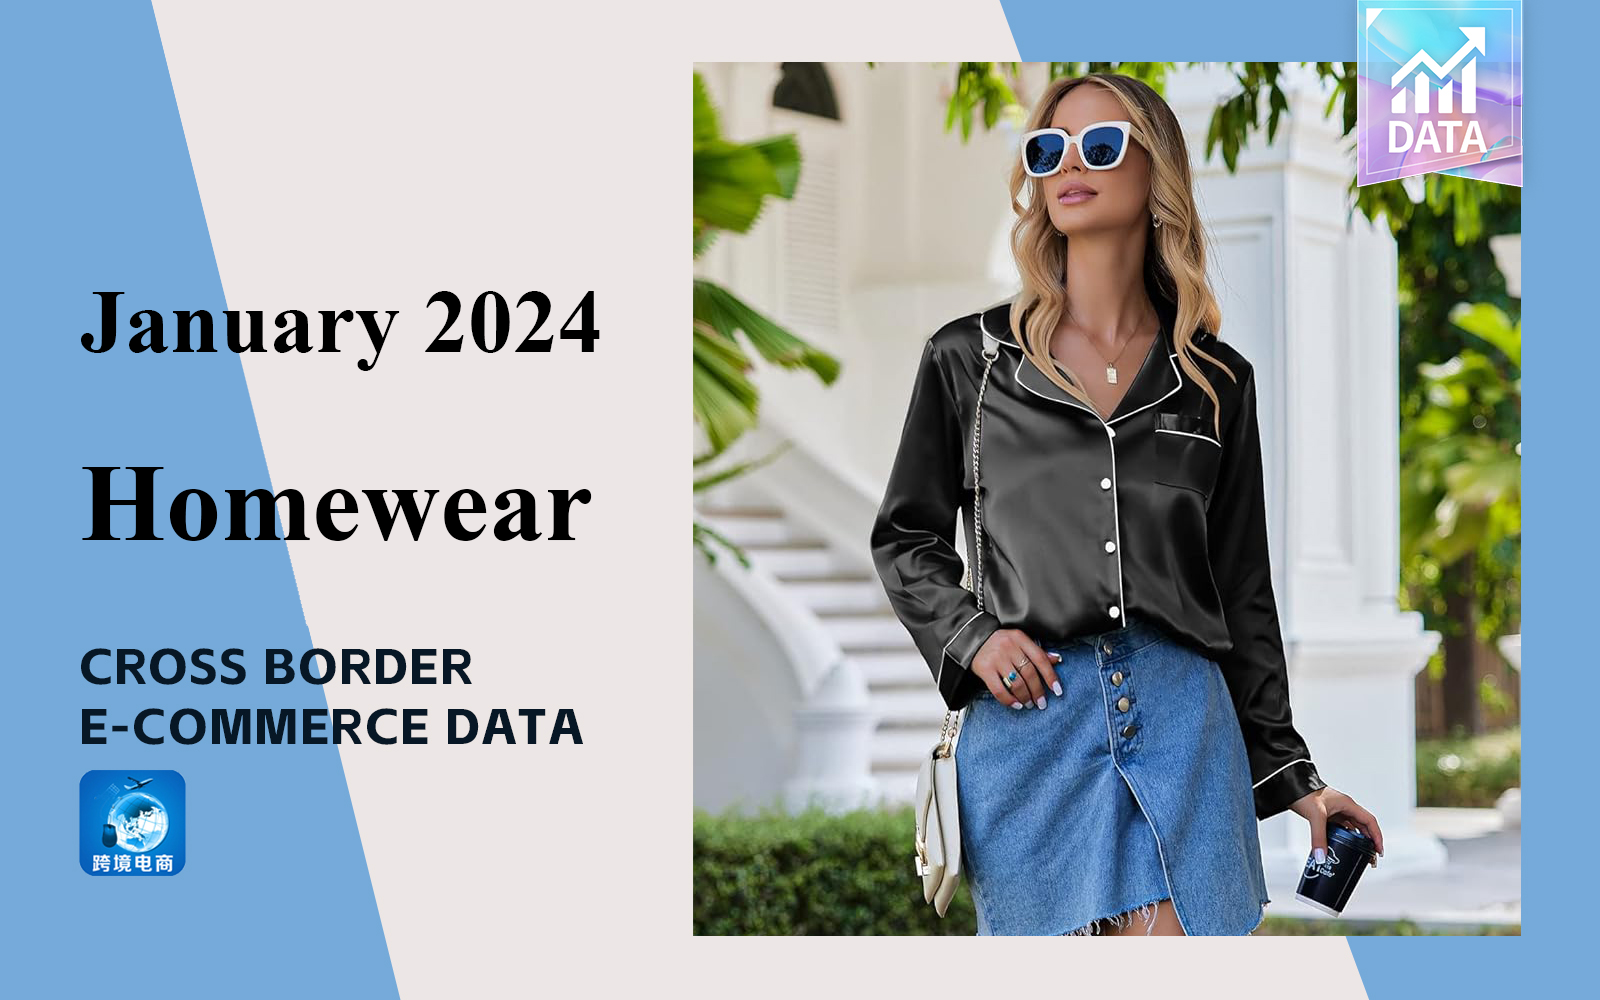 The Analysis of Cross border E-commerce Data for Women's Homewear in January